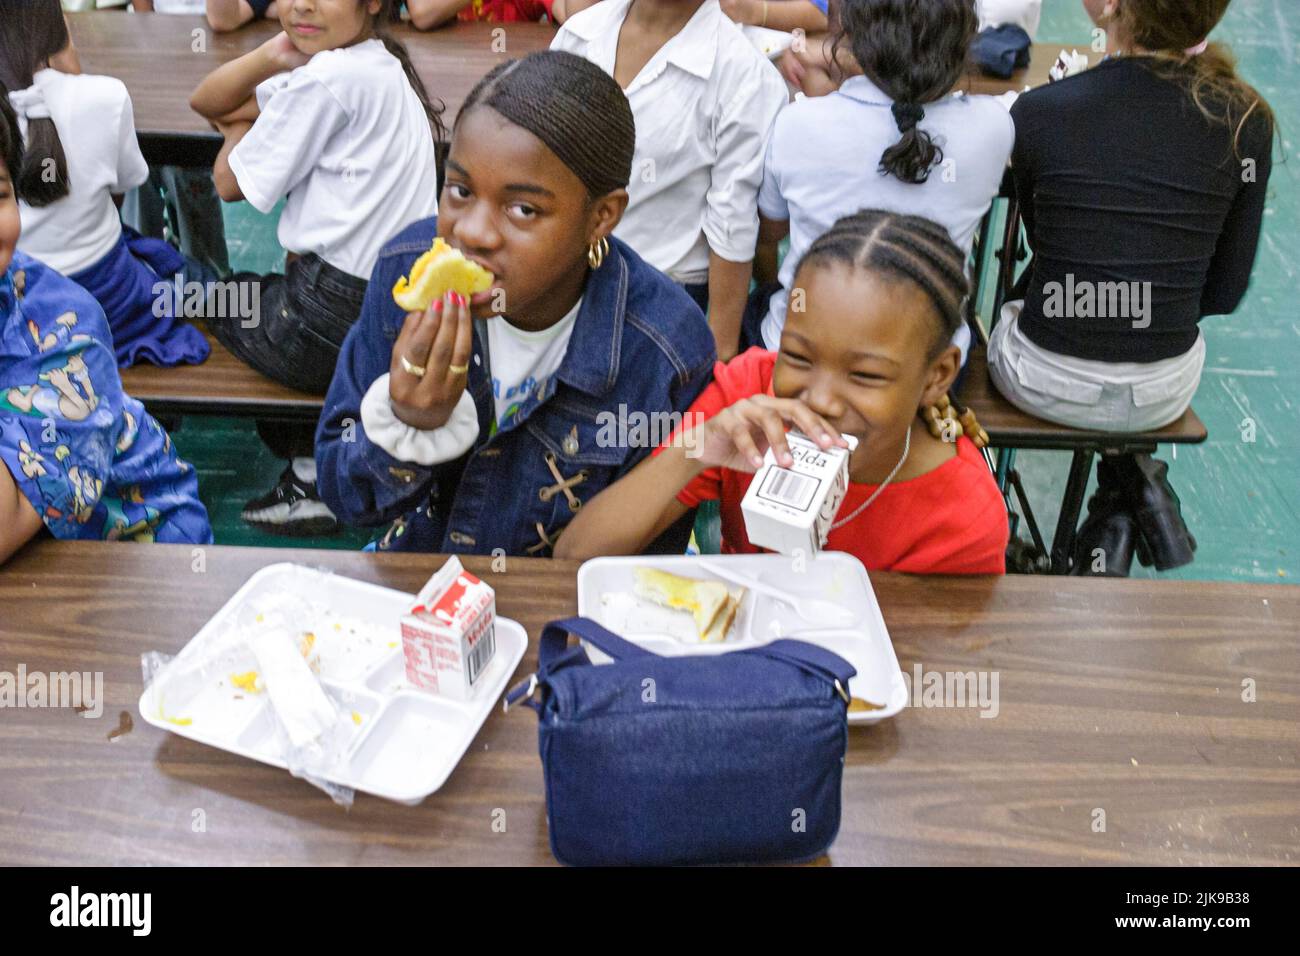 Miami Florida, Frederick Douglass Elementary School Primary, Armut mit geringem Einkommen Schwarze Studenten Mädchen Kinder Cafeteria Essen Mittagessen Mittagessen Mittagessen Tische Stockfoto